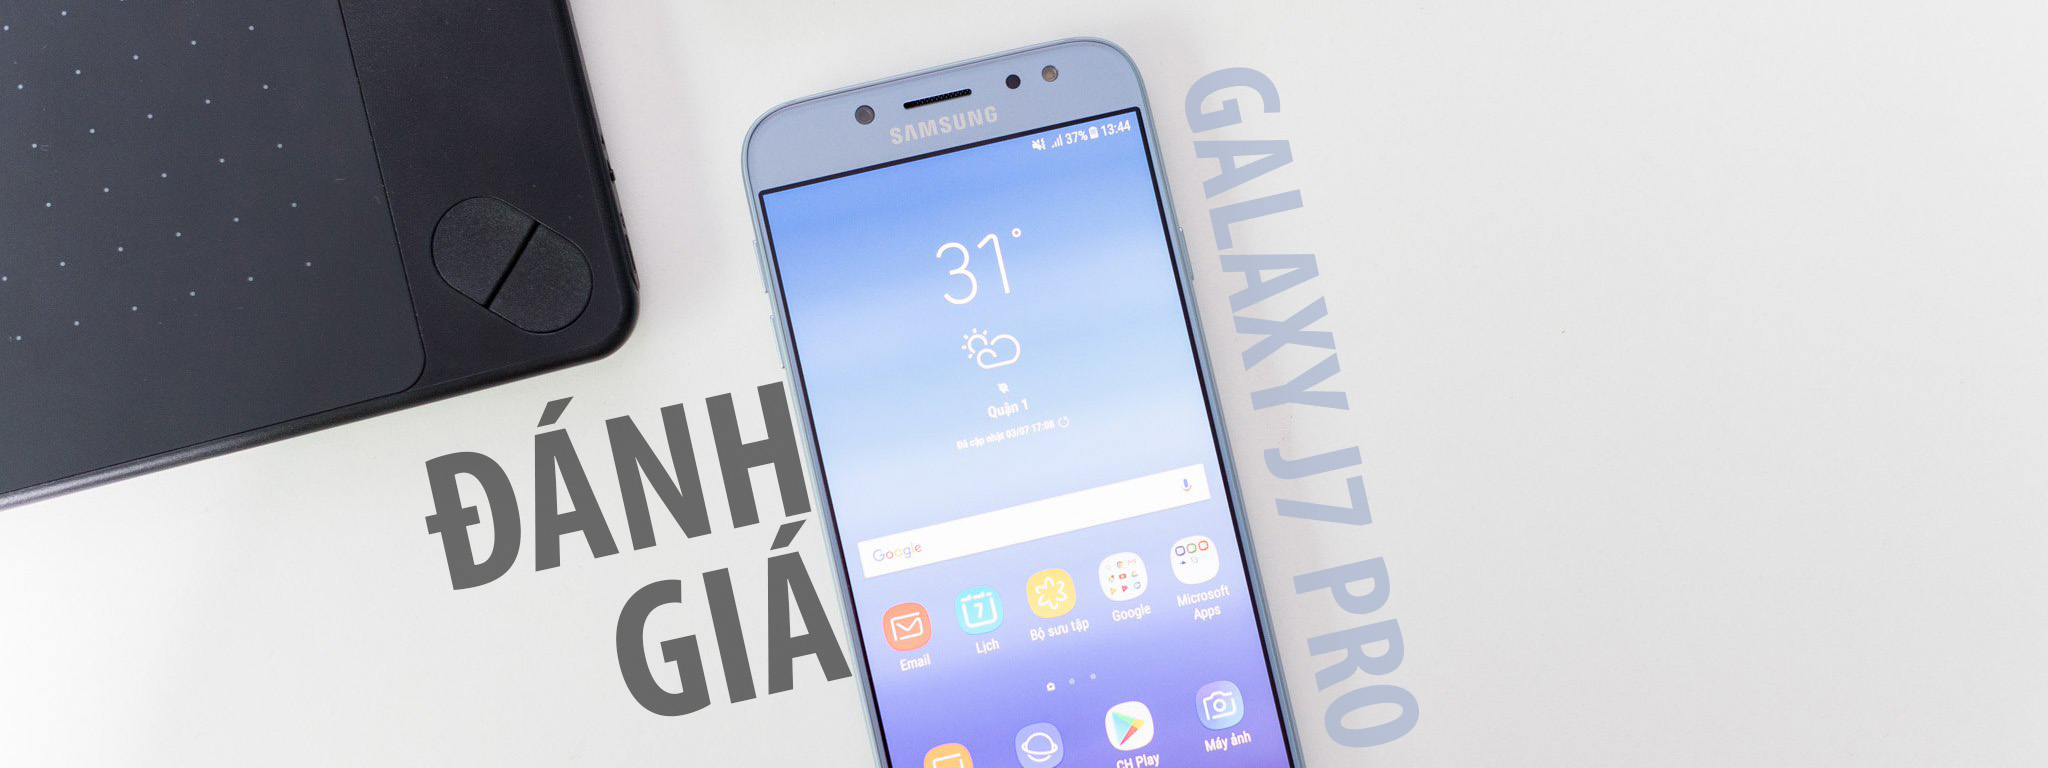 Thay màn hình Samsung Galaxy J7 Pro chính hãng Orizin giá tốt